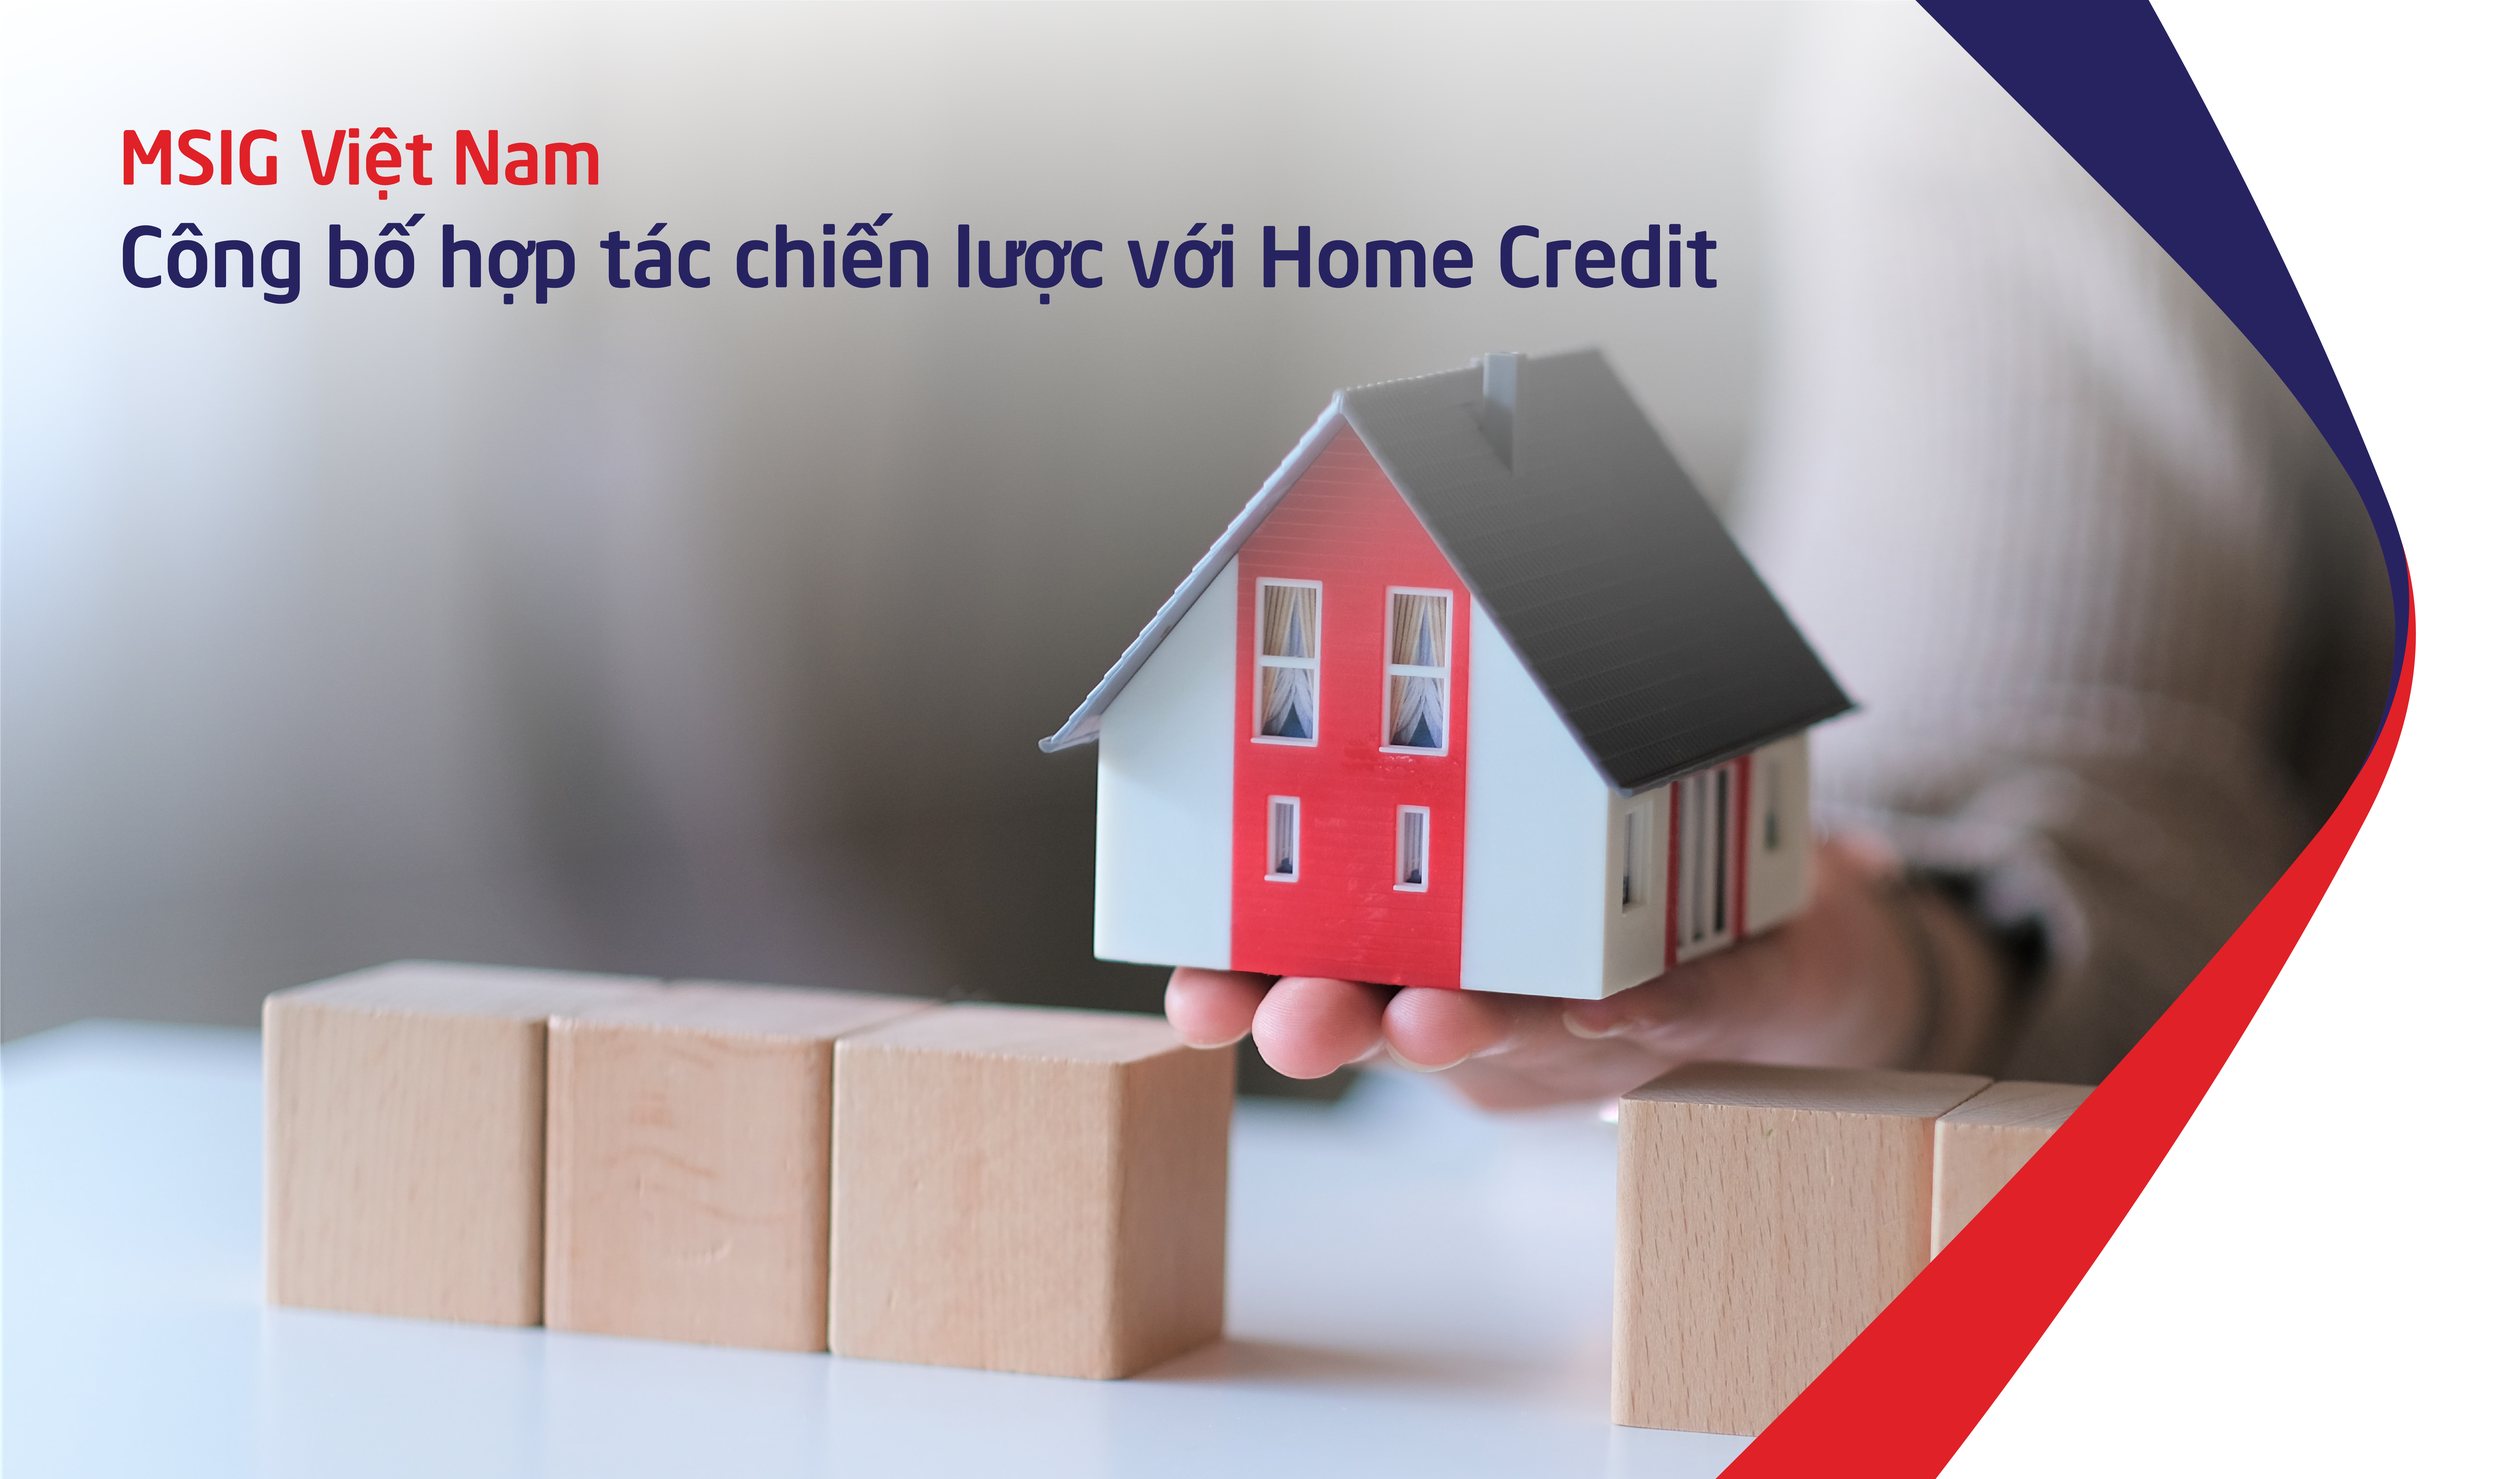 MSIG Việt Nam công bố hợp tác chiến lược với Home Credit 